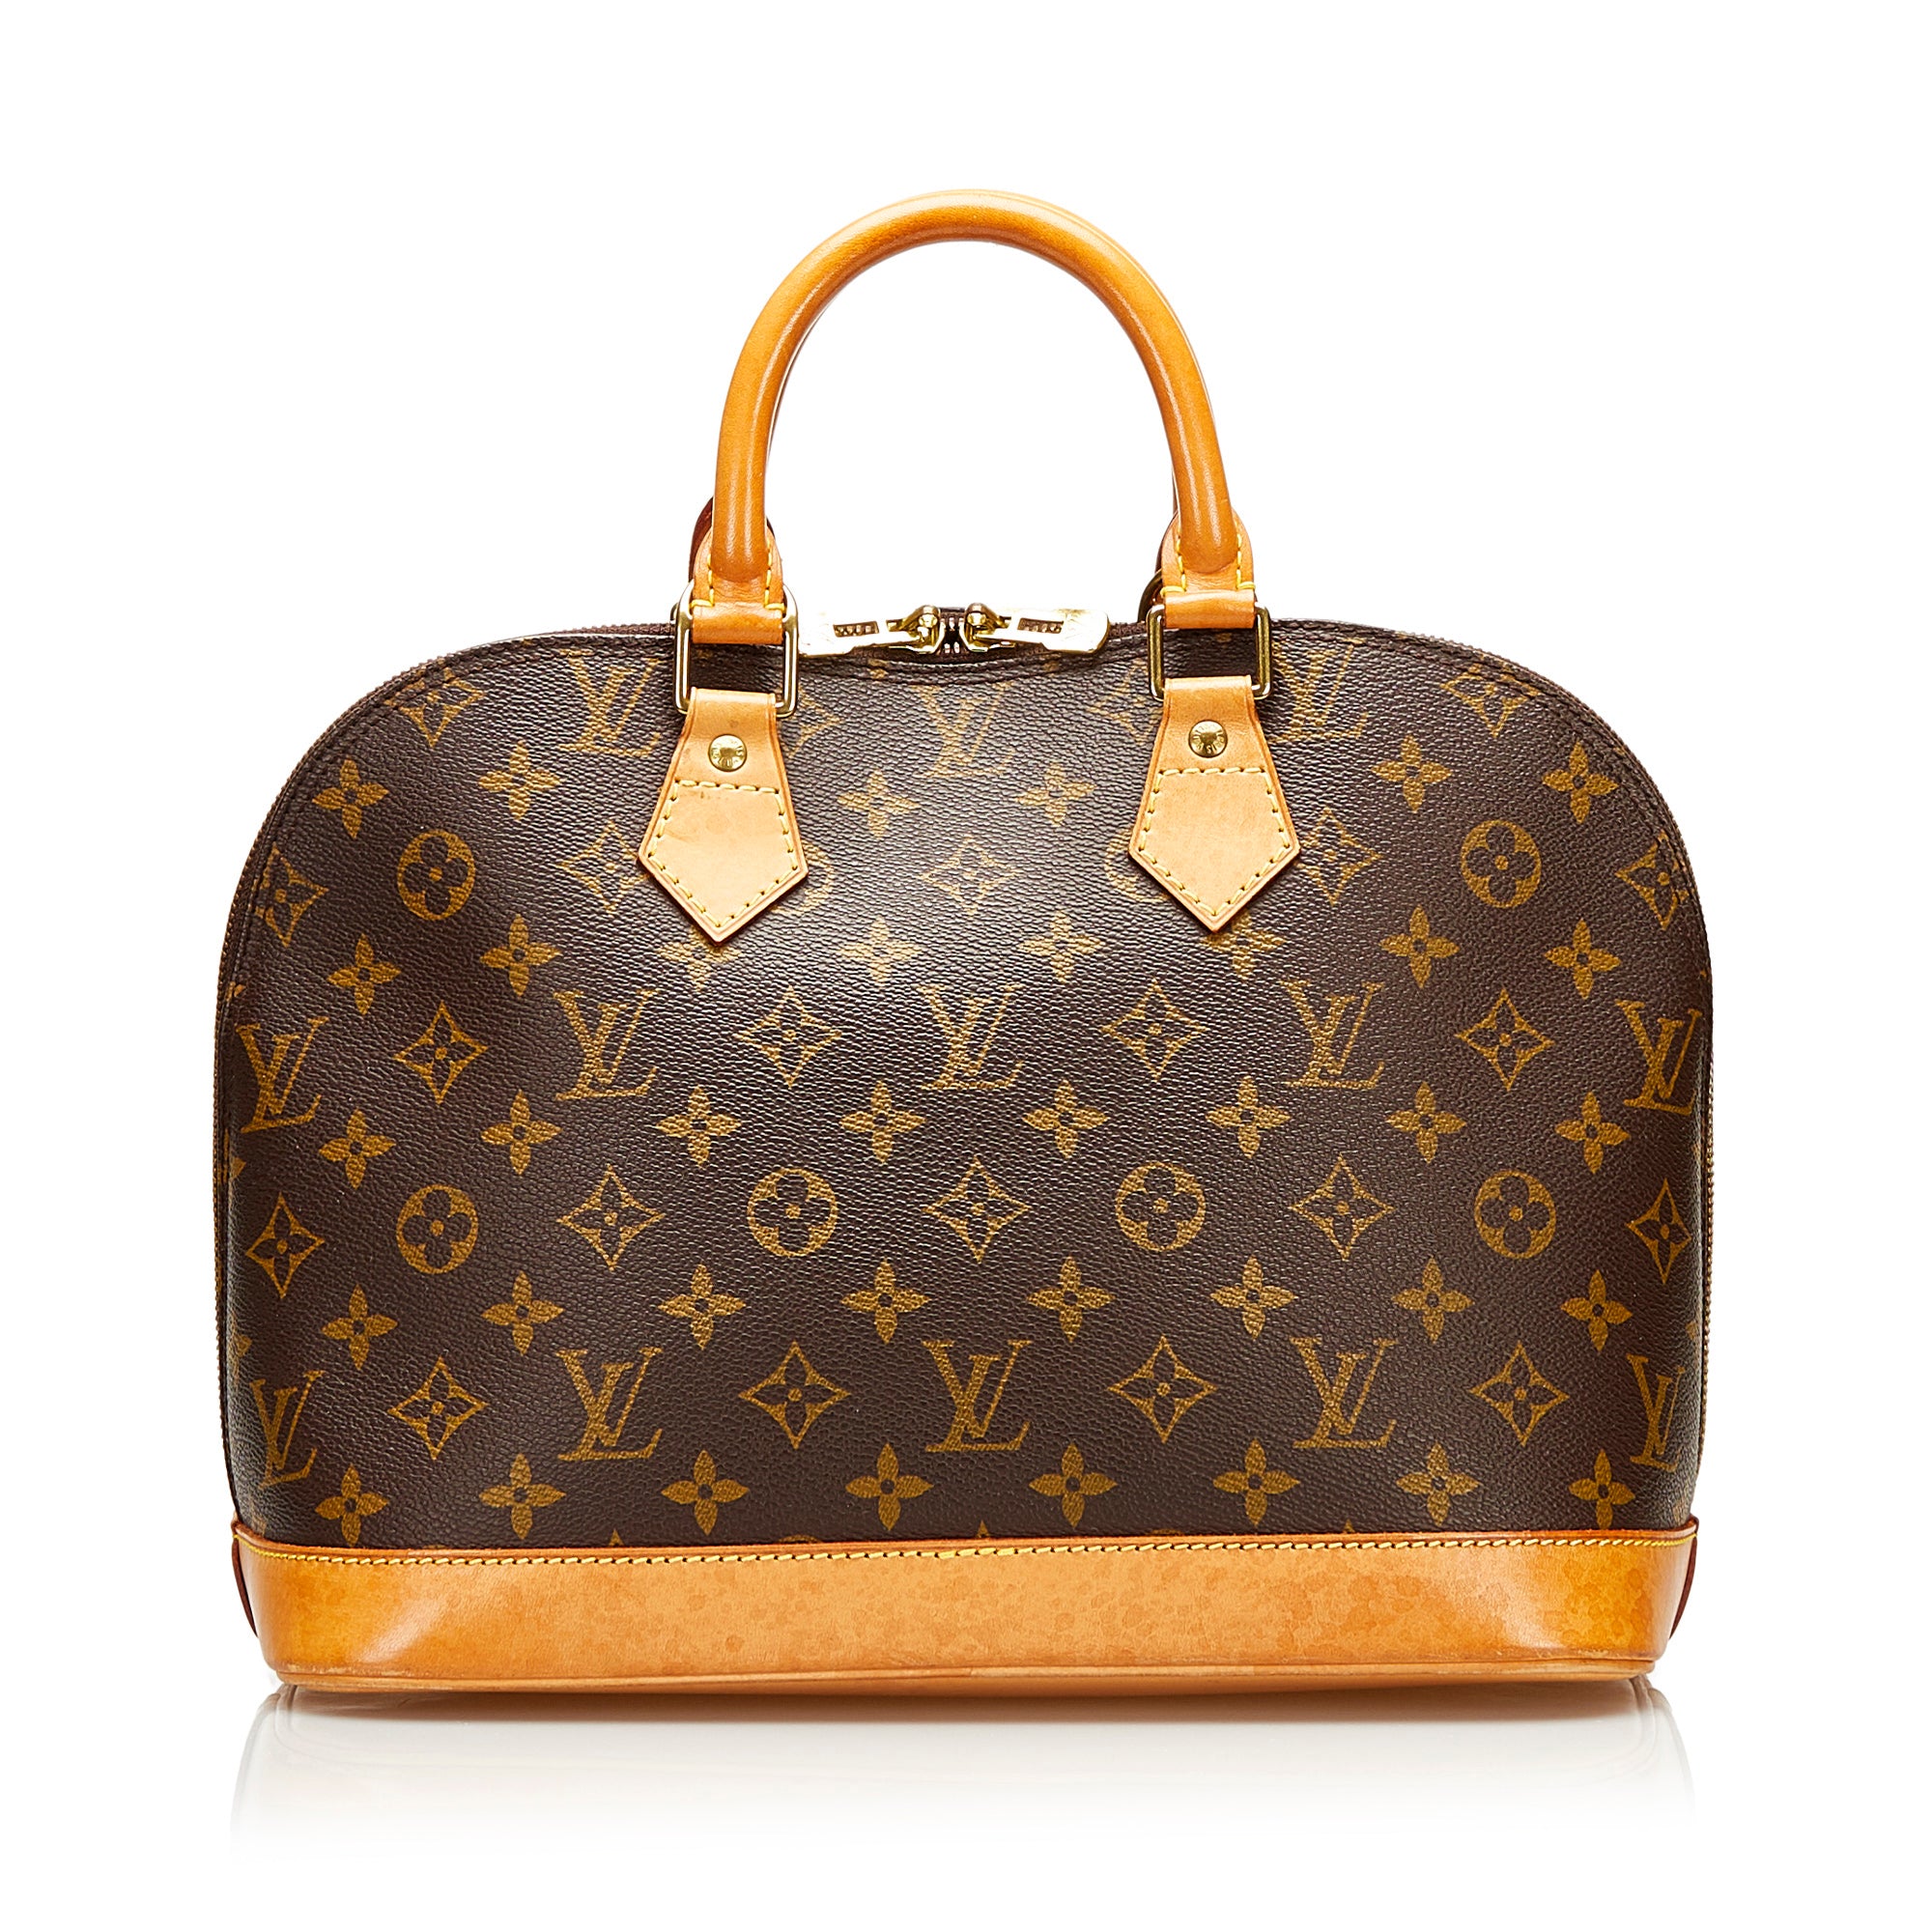 Precio de los bolsos Louis Vuitton de segunda mano